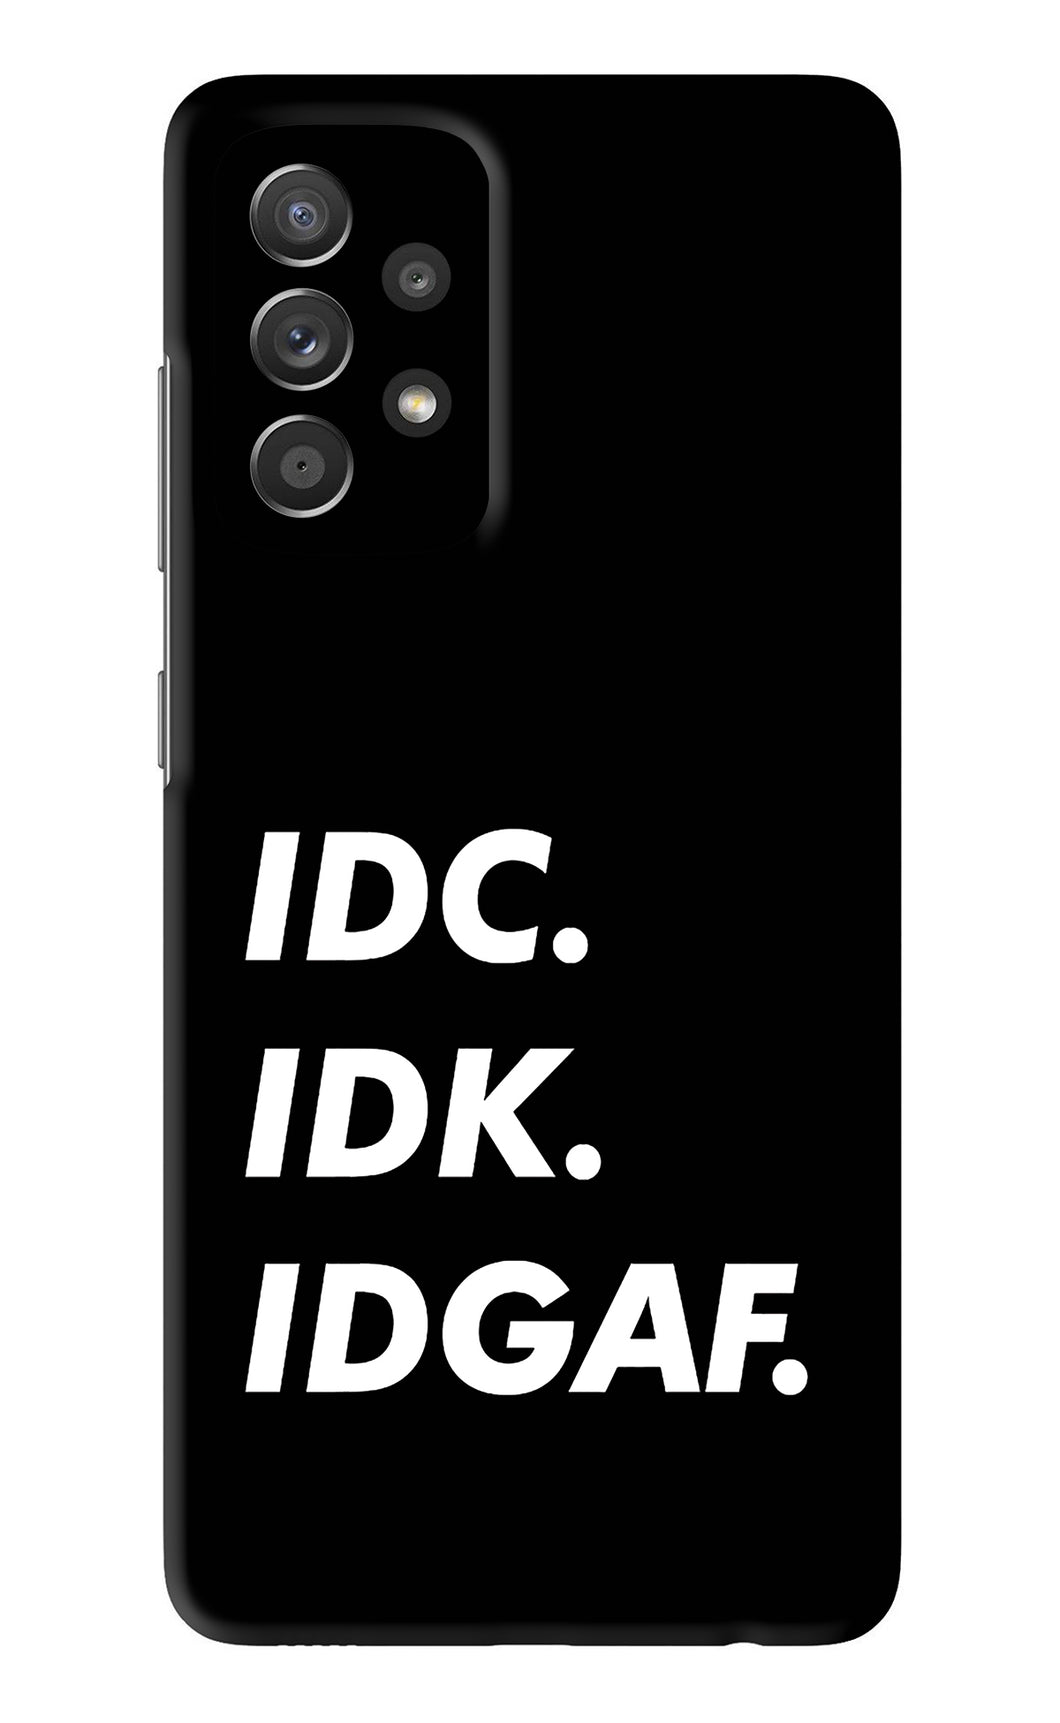 Idc Idk Idgaf Samsung Galaxy A52 Back Skin Wrap